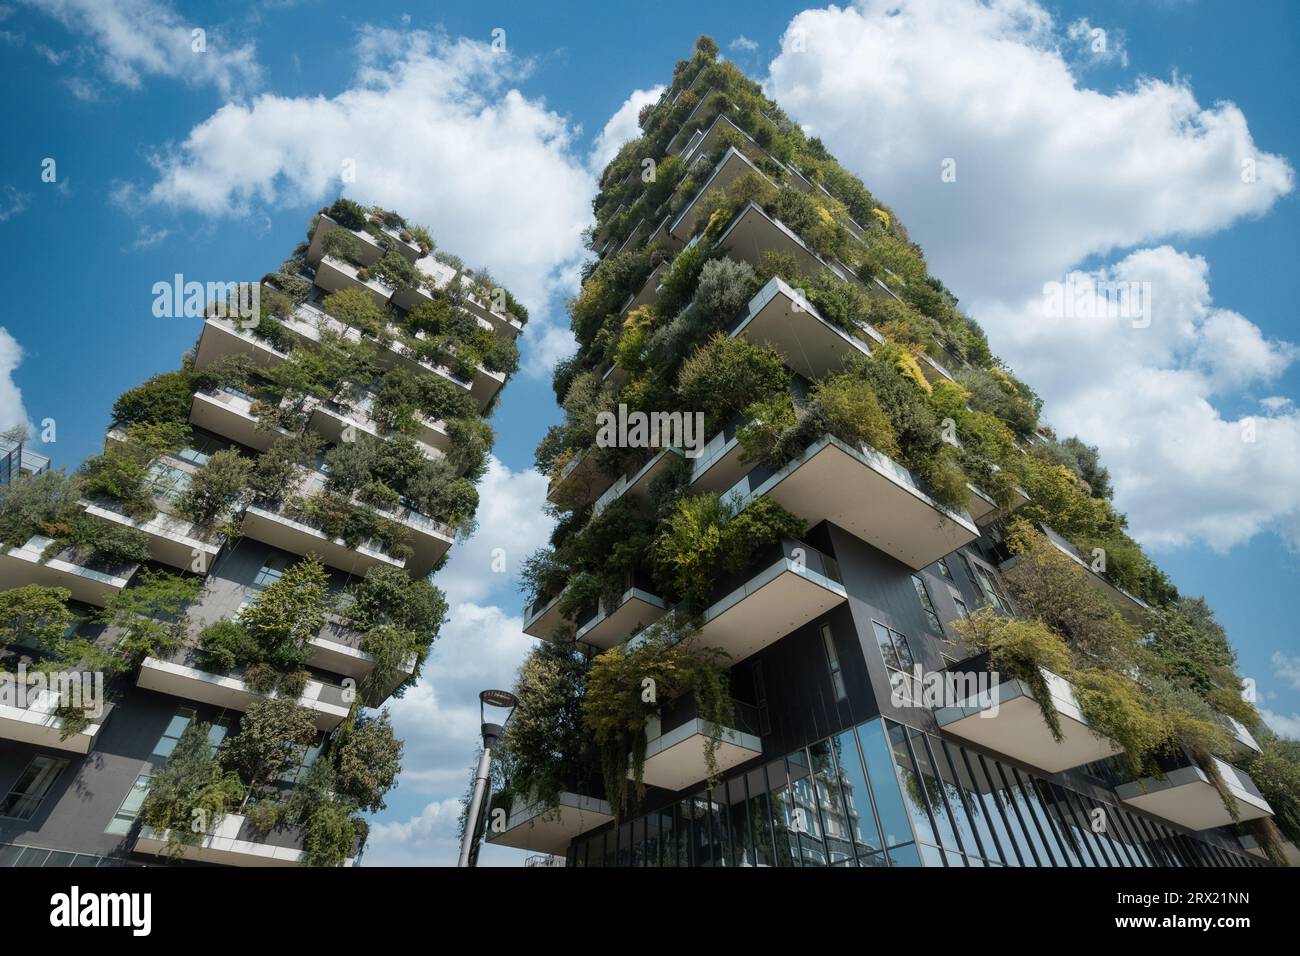 Monuments architecturaux modernes Bosco verticale (Forêt verticale) bâtiments dans le quartier Porta Nuova de Milan, Italie. Banque D'Images